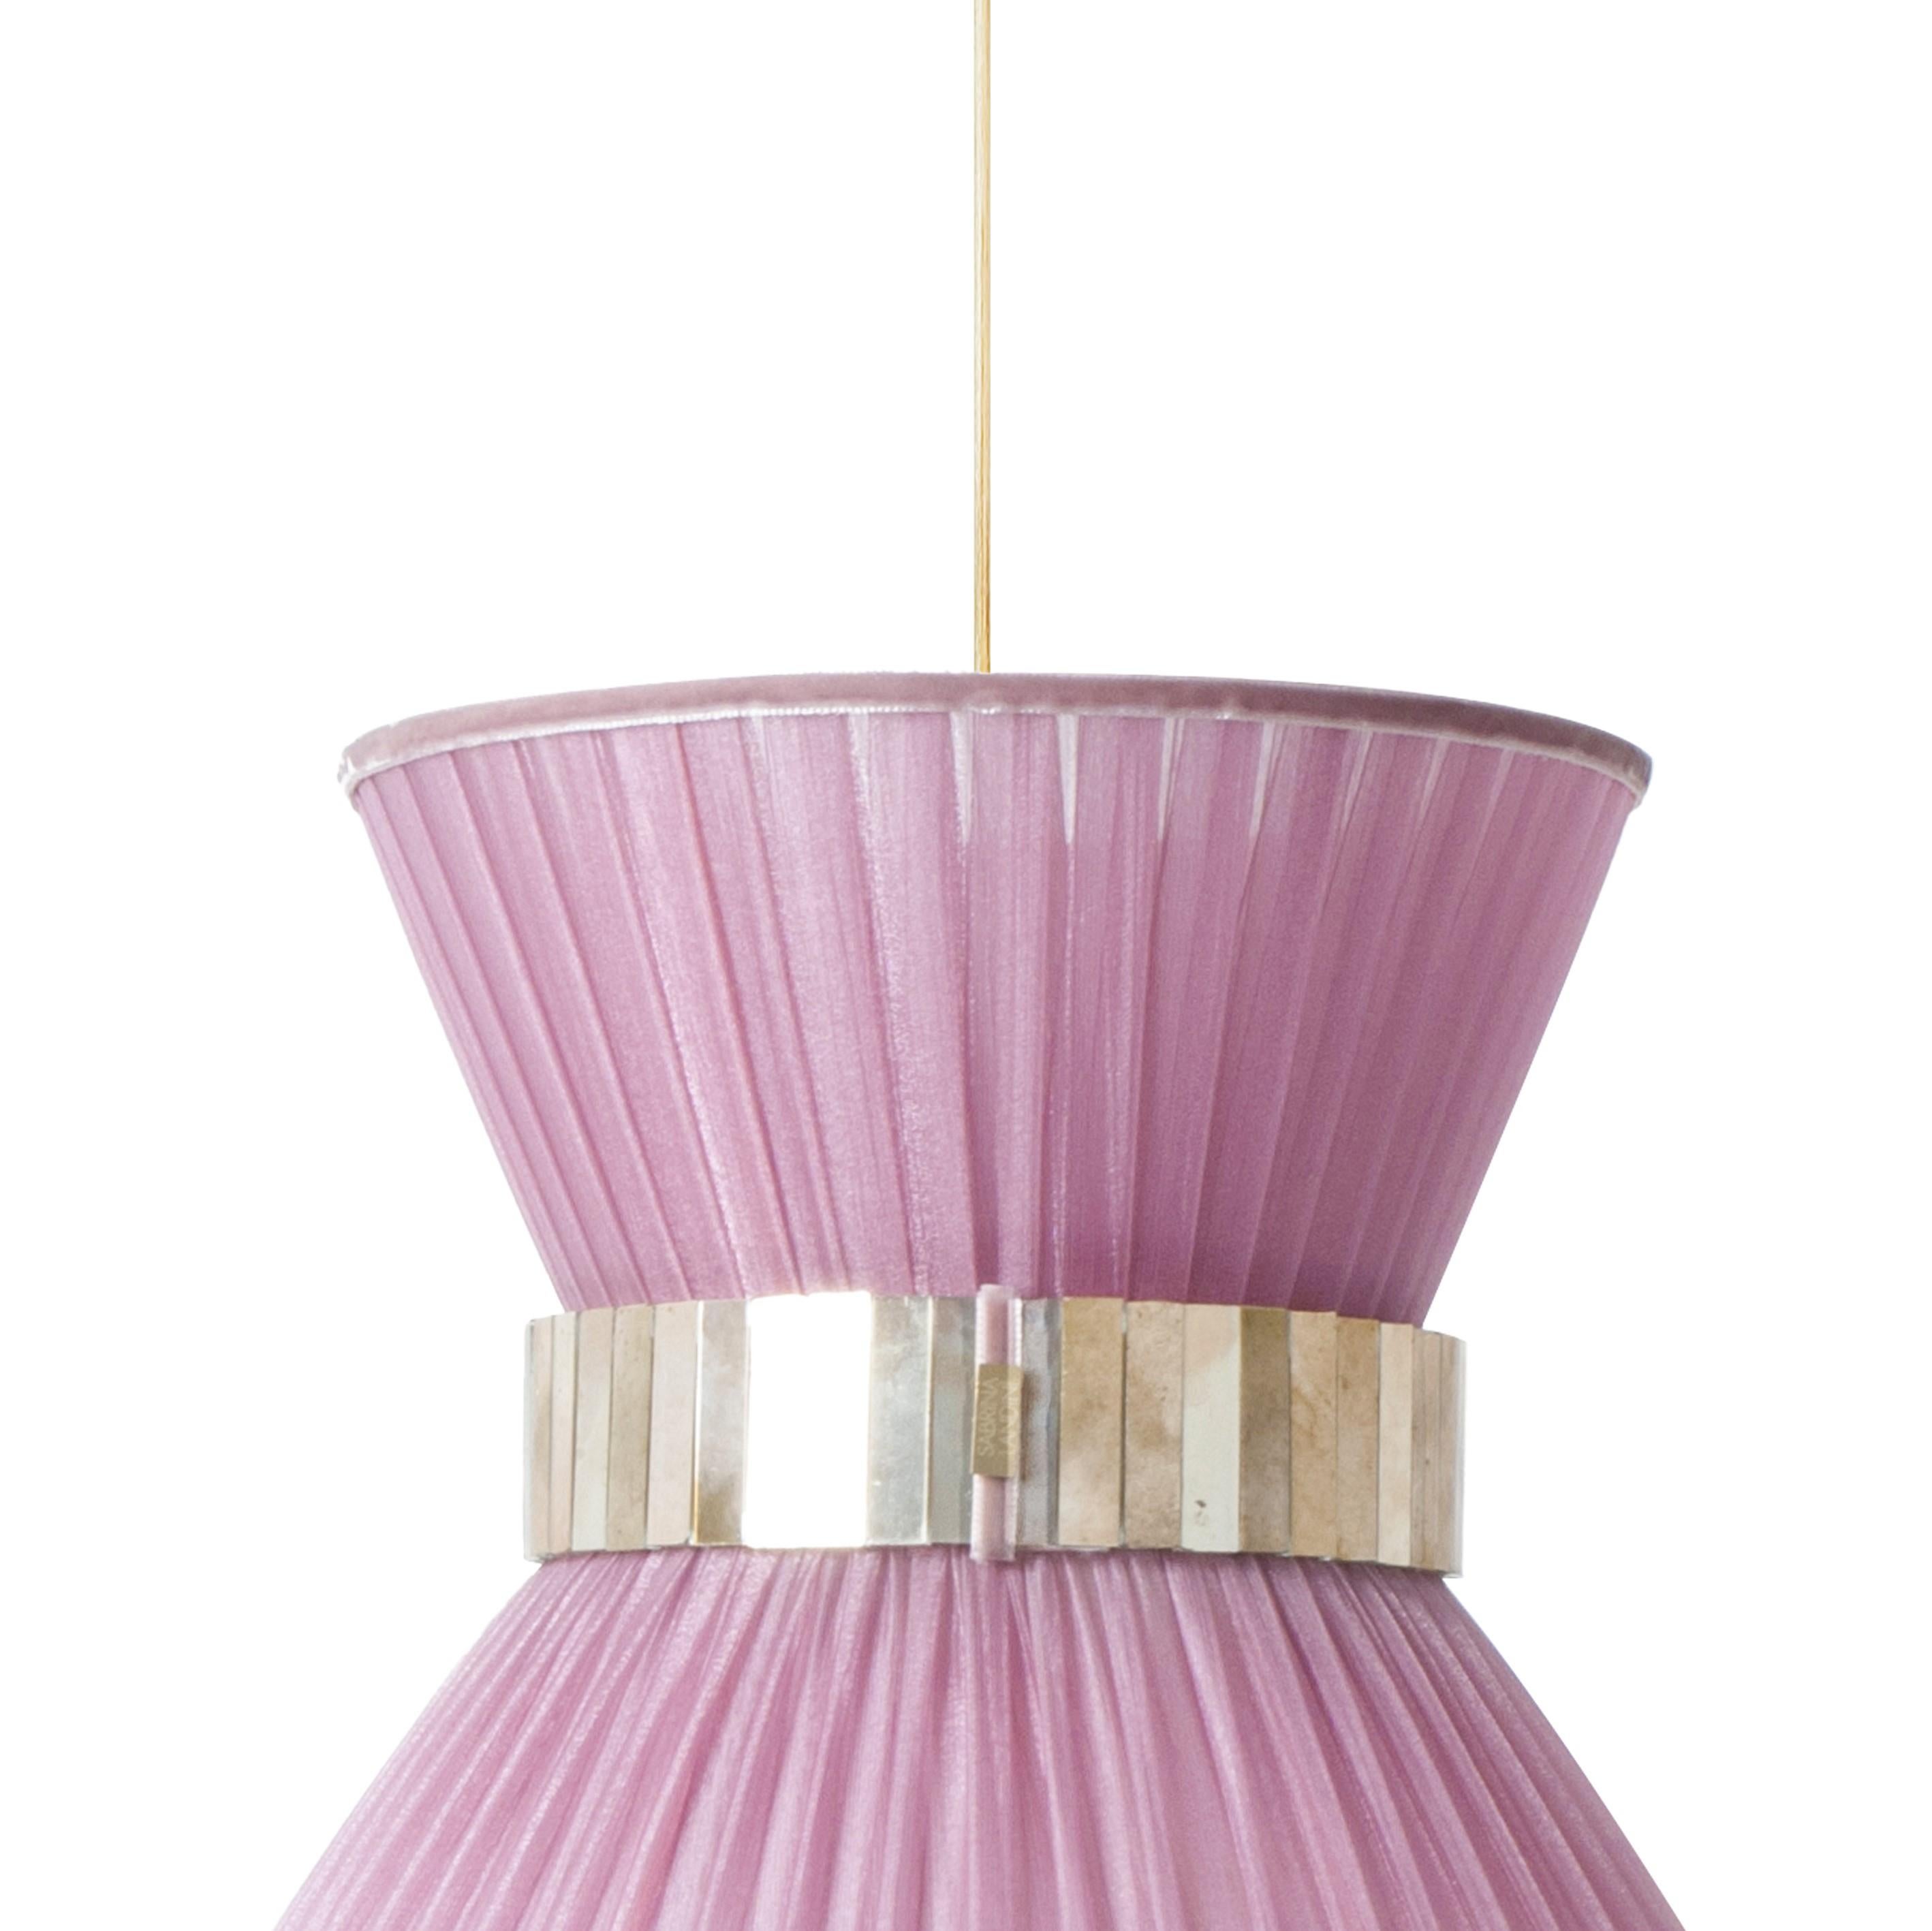 TIFFANY  die ikonische Lampe!
 
Seit 20 Jahren sind wir bestrebt, Ihnen einzigartige Collection'S in Bezug auf Design und Qualität anzubieten. Alle unsere kultigen Produkte werden in unserem Atelier in der Toskana, Italien, nach einem uralten